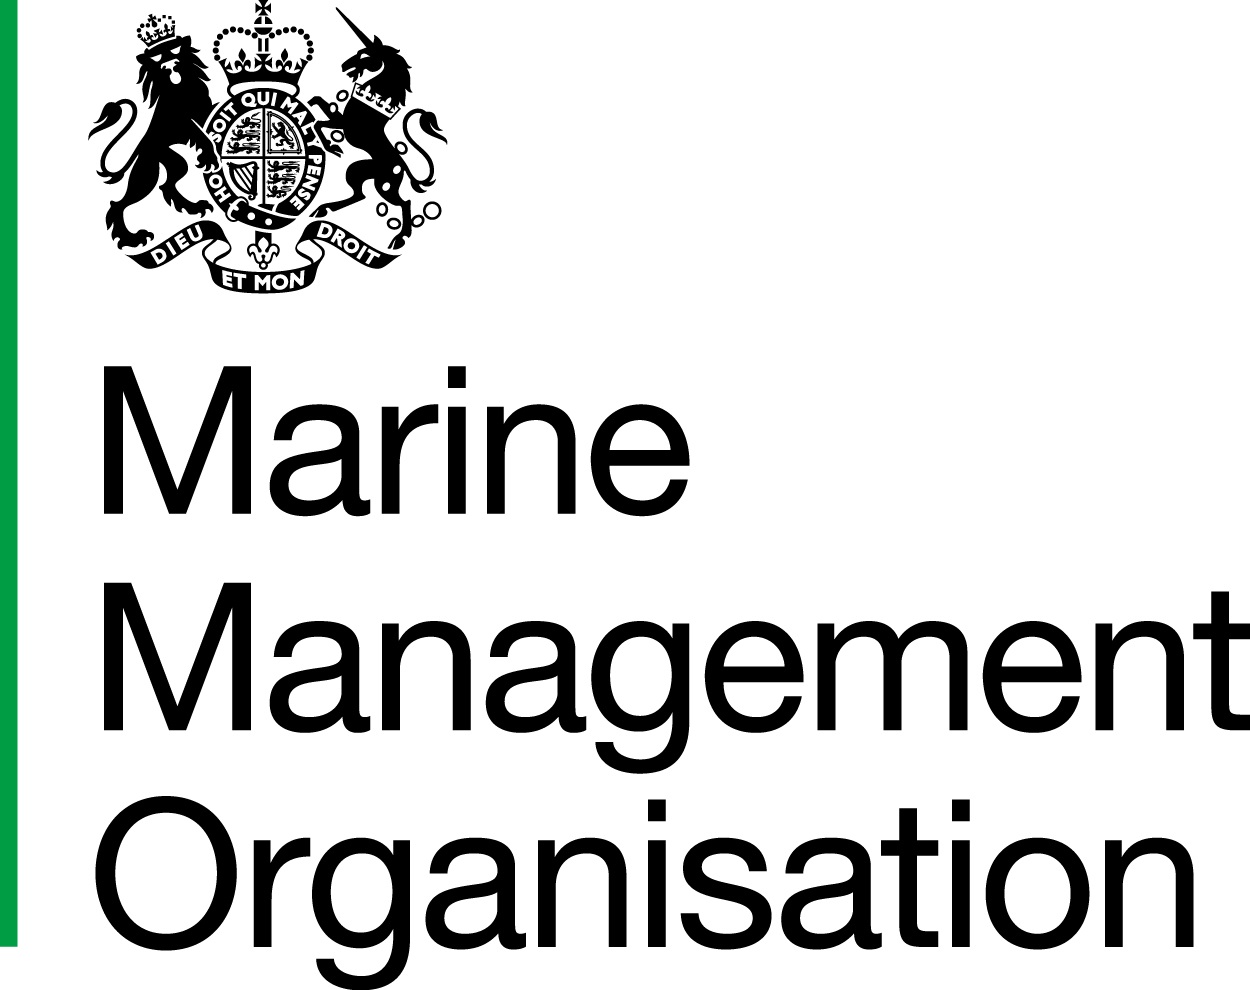 Marine Management organisation